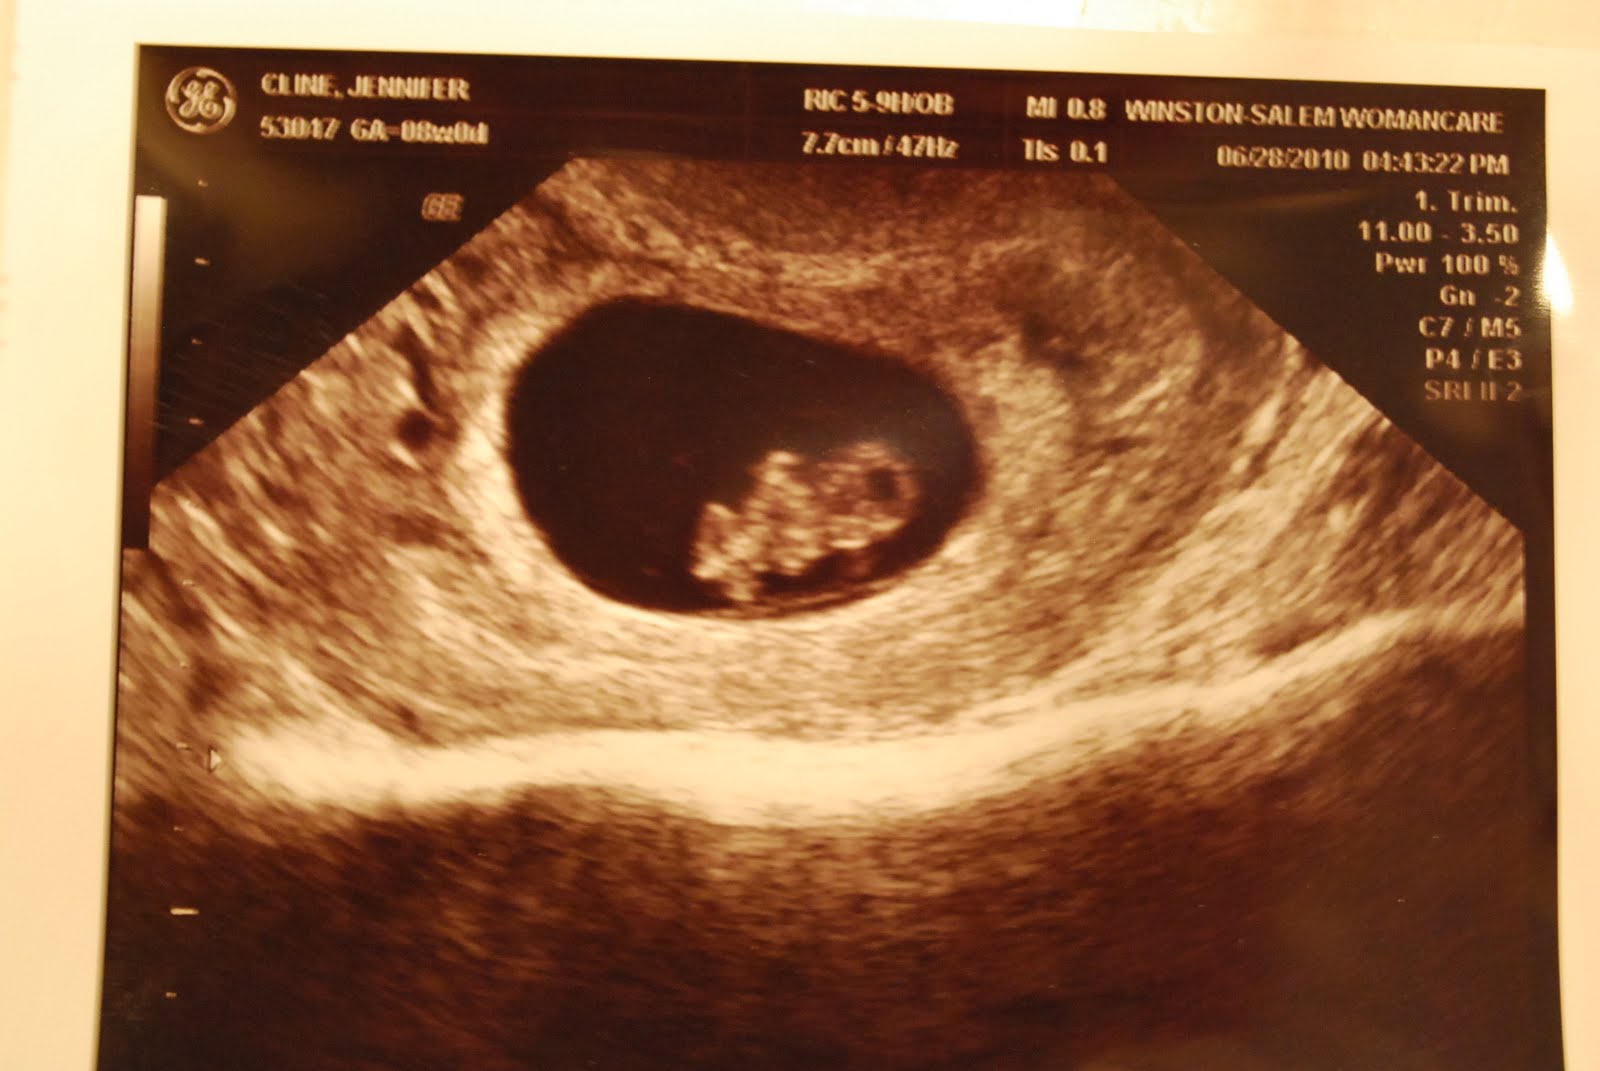 8 неделя 24 года. 8 Недель беременности фото плода на УЗИ. Фото УЗИ на 8 неделе беременности акушерской. Снимок УЗИ эмбриона на 8 неделе беременности. УЗИ на 8 неделе беременности акушерской.